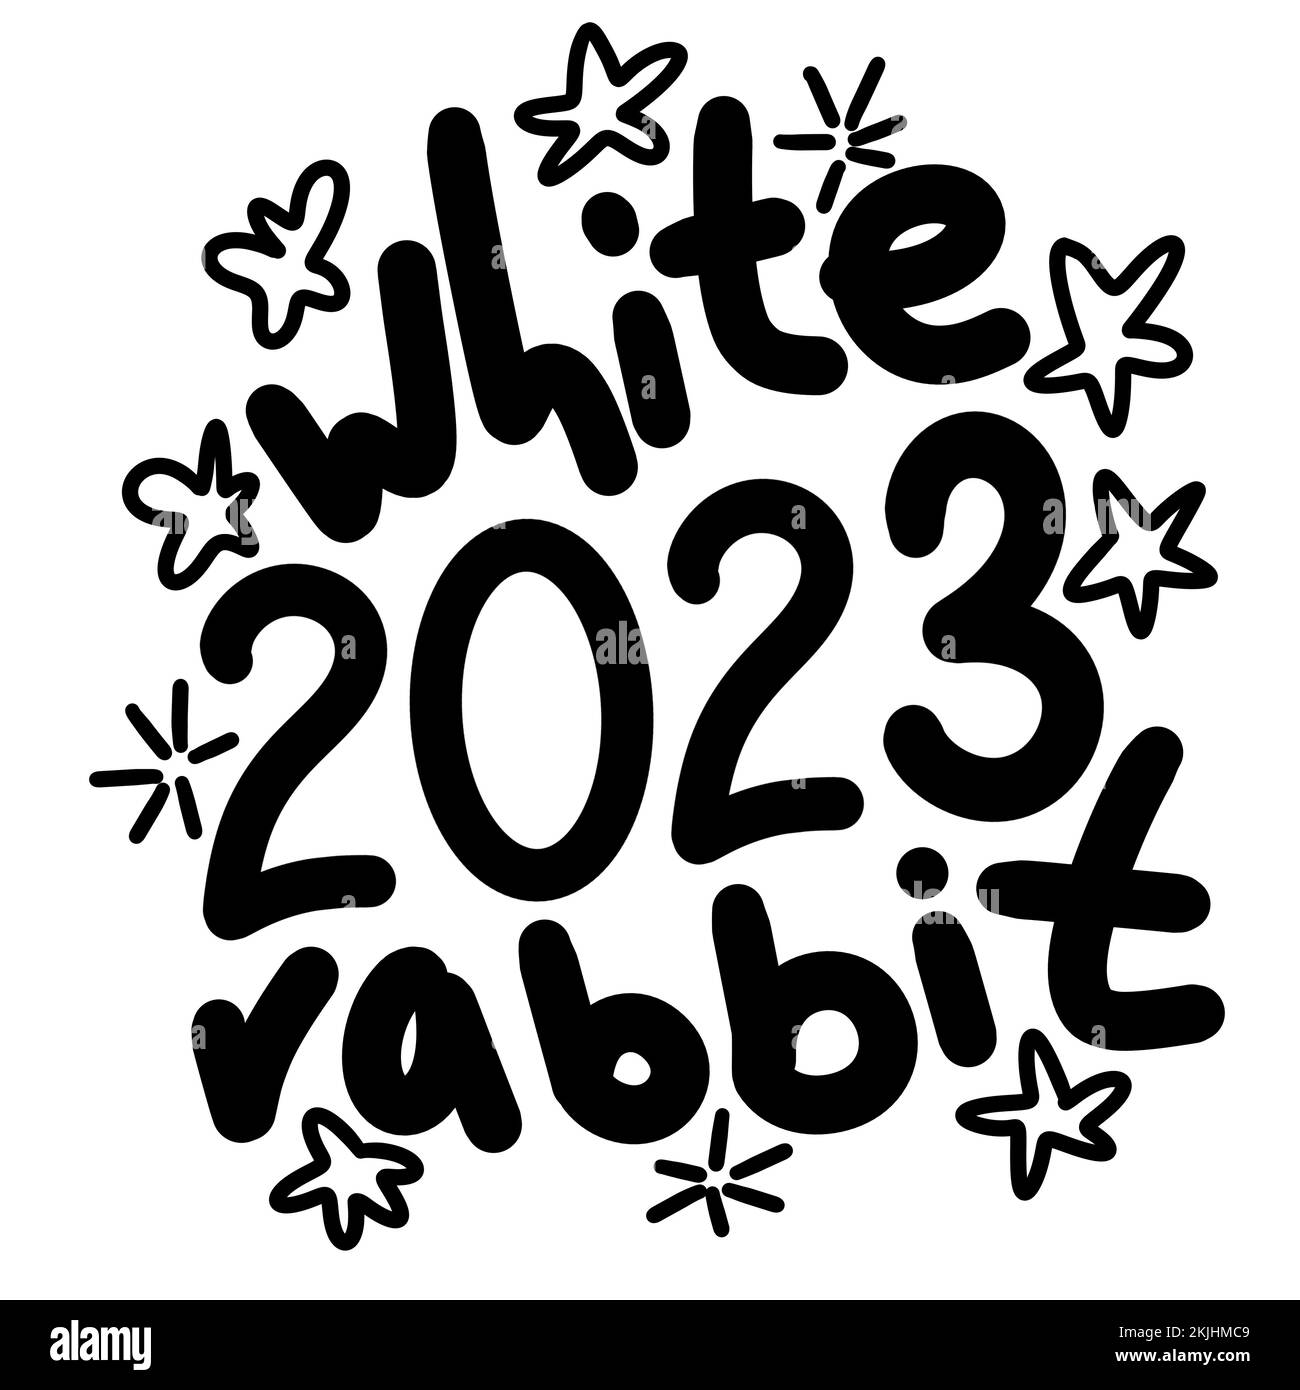 Handgezeichnete schwarze Linie mit weißem Kaninchen 2023 Symbol für chinesisches Neujahr. Niedliche Wörter Schriftzug Satz Tierzeichnung Winterkarte Einladung Party Feier Poster Stockfoto